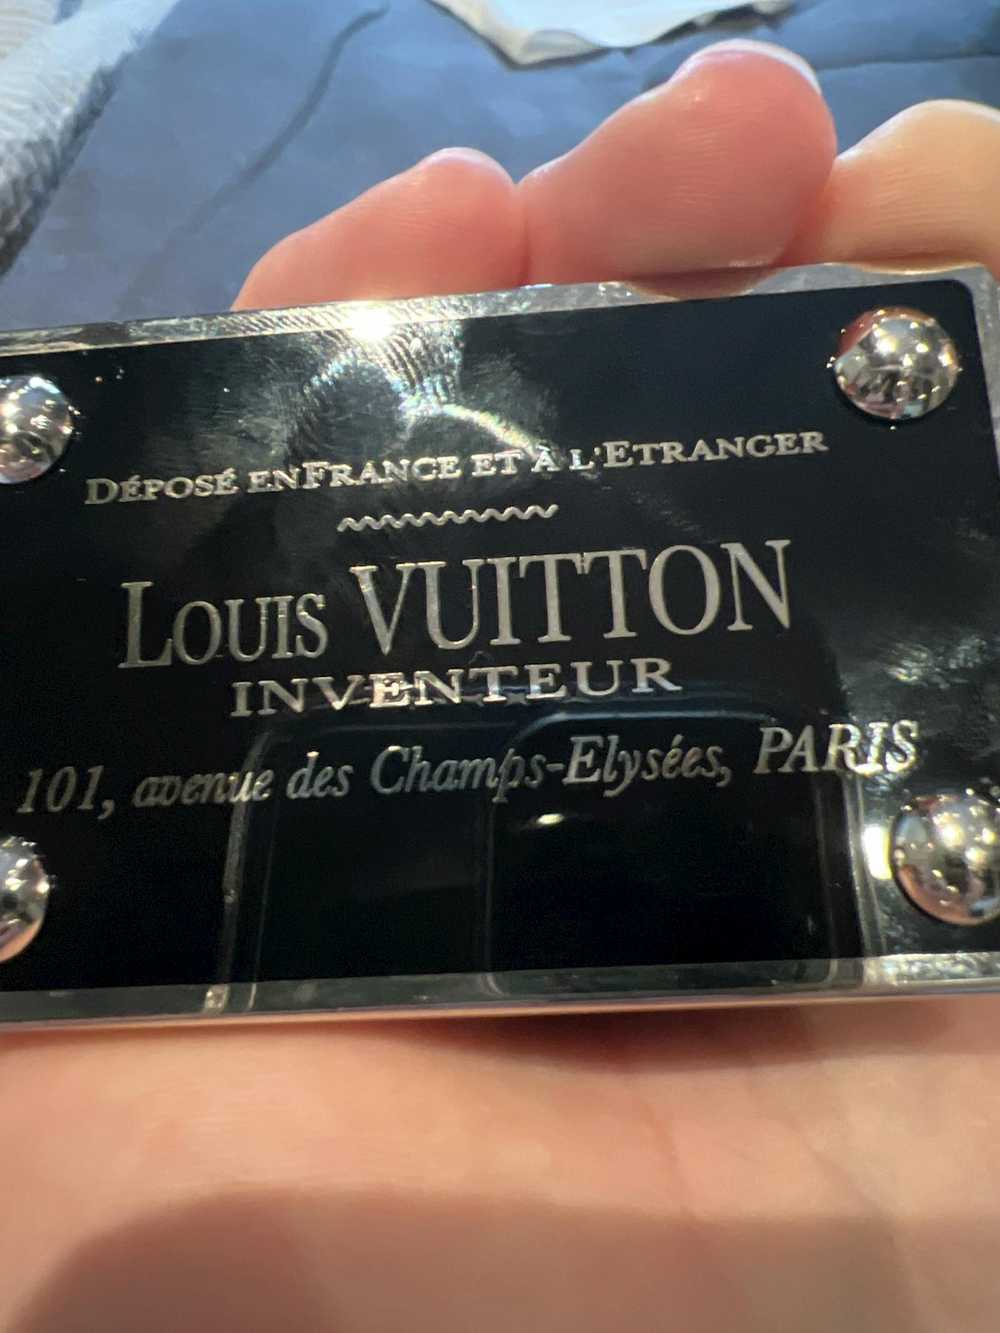 Louis Vuitton LOUIS VUITTON Inventeur Reversible - image 3